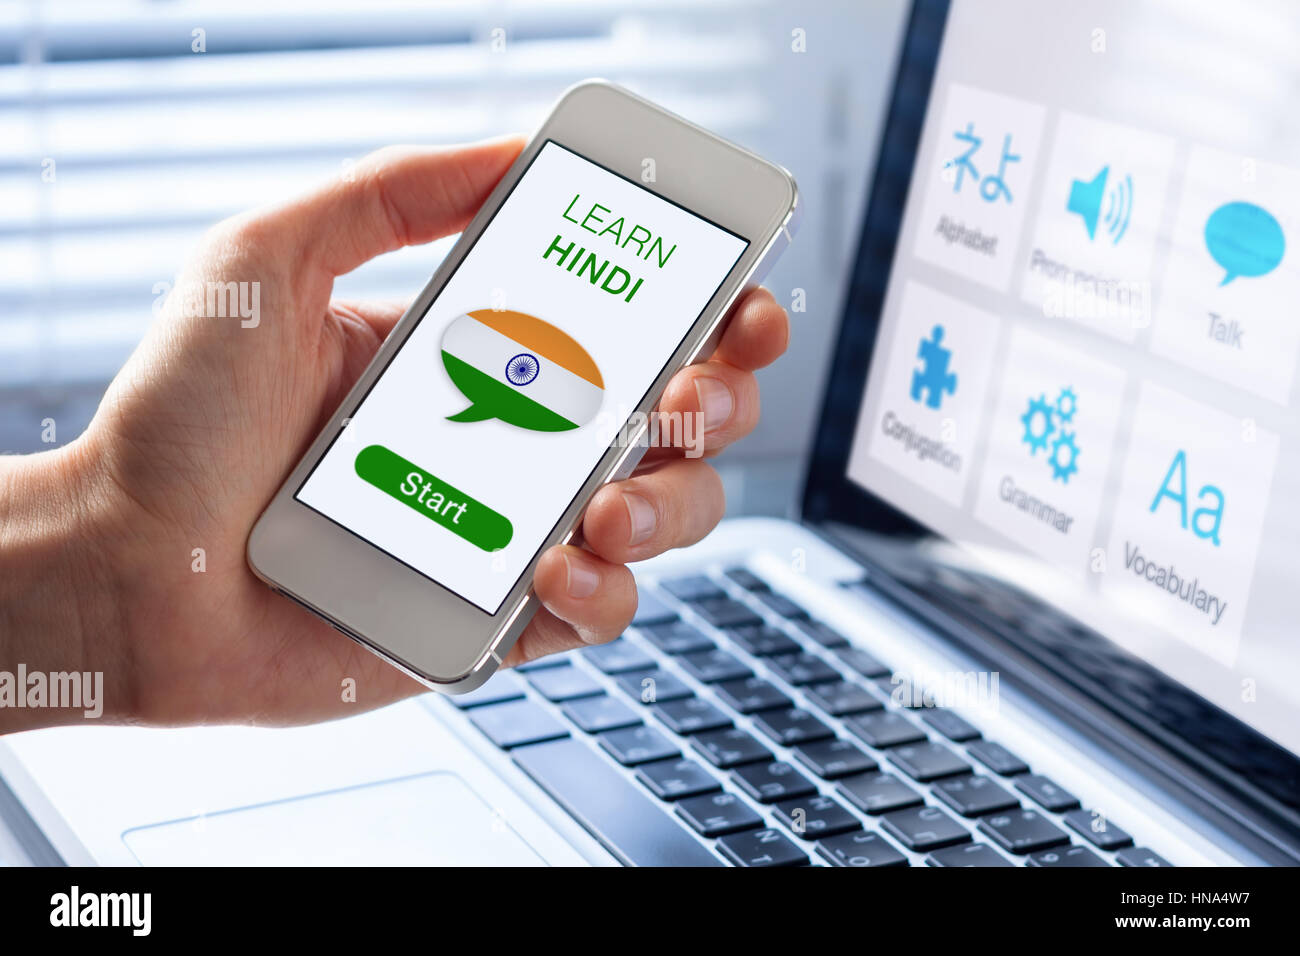 Apprendre l'Hindi online concept avec une personne montrant l'e-learning application sur téléphone mobile avec le drapeau de l'Inde Banque D'Images